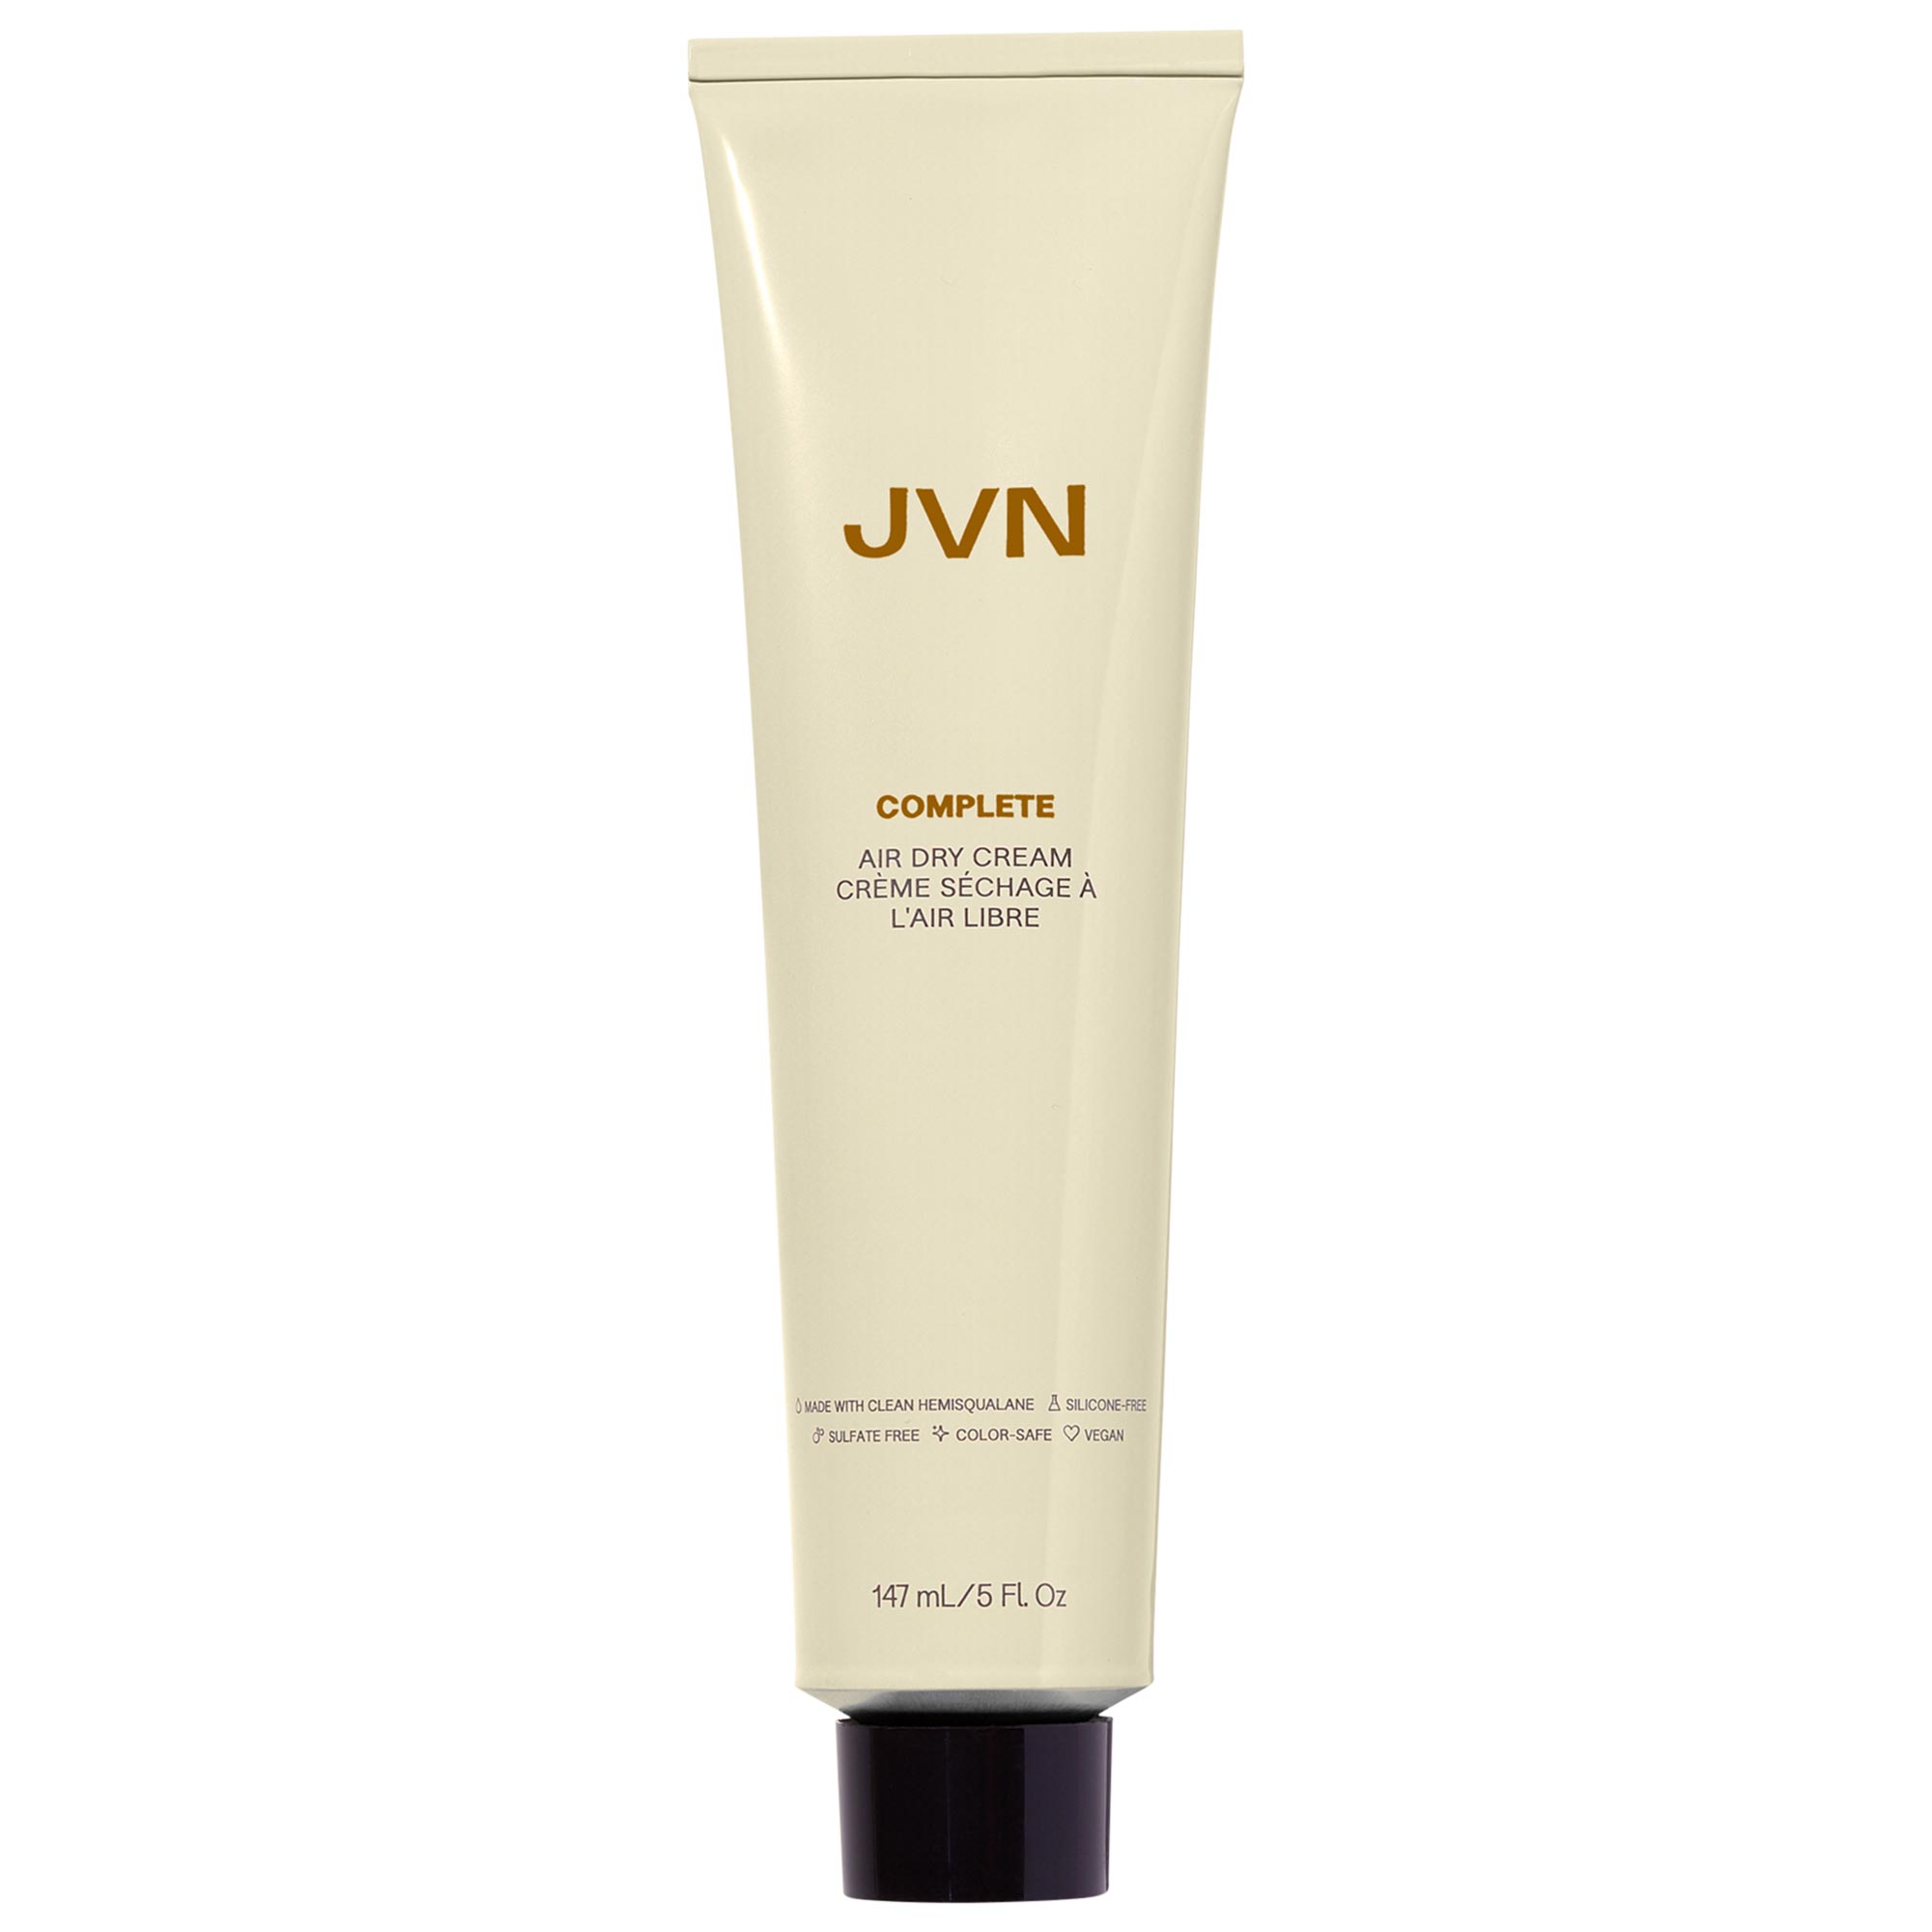 Комплексный увлажняющий крем для укладки волос, сухой на воздухе JVN